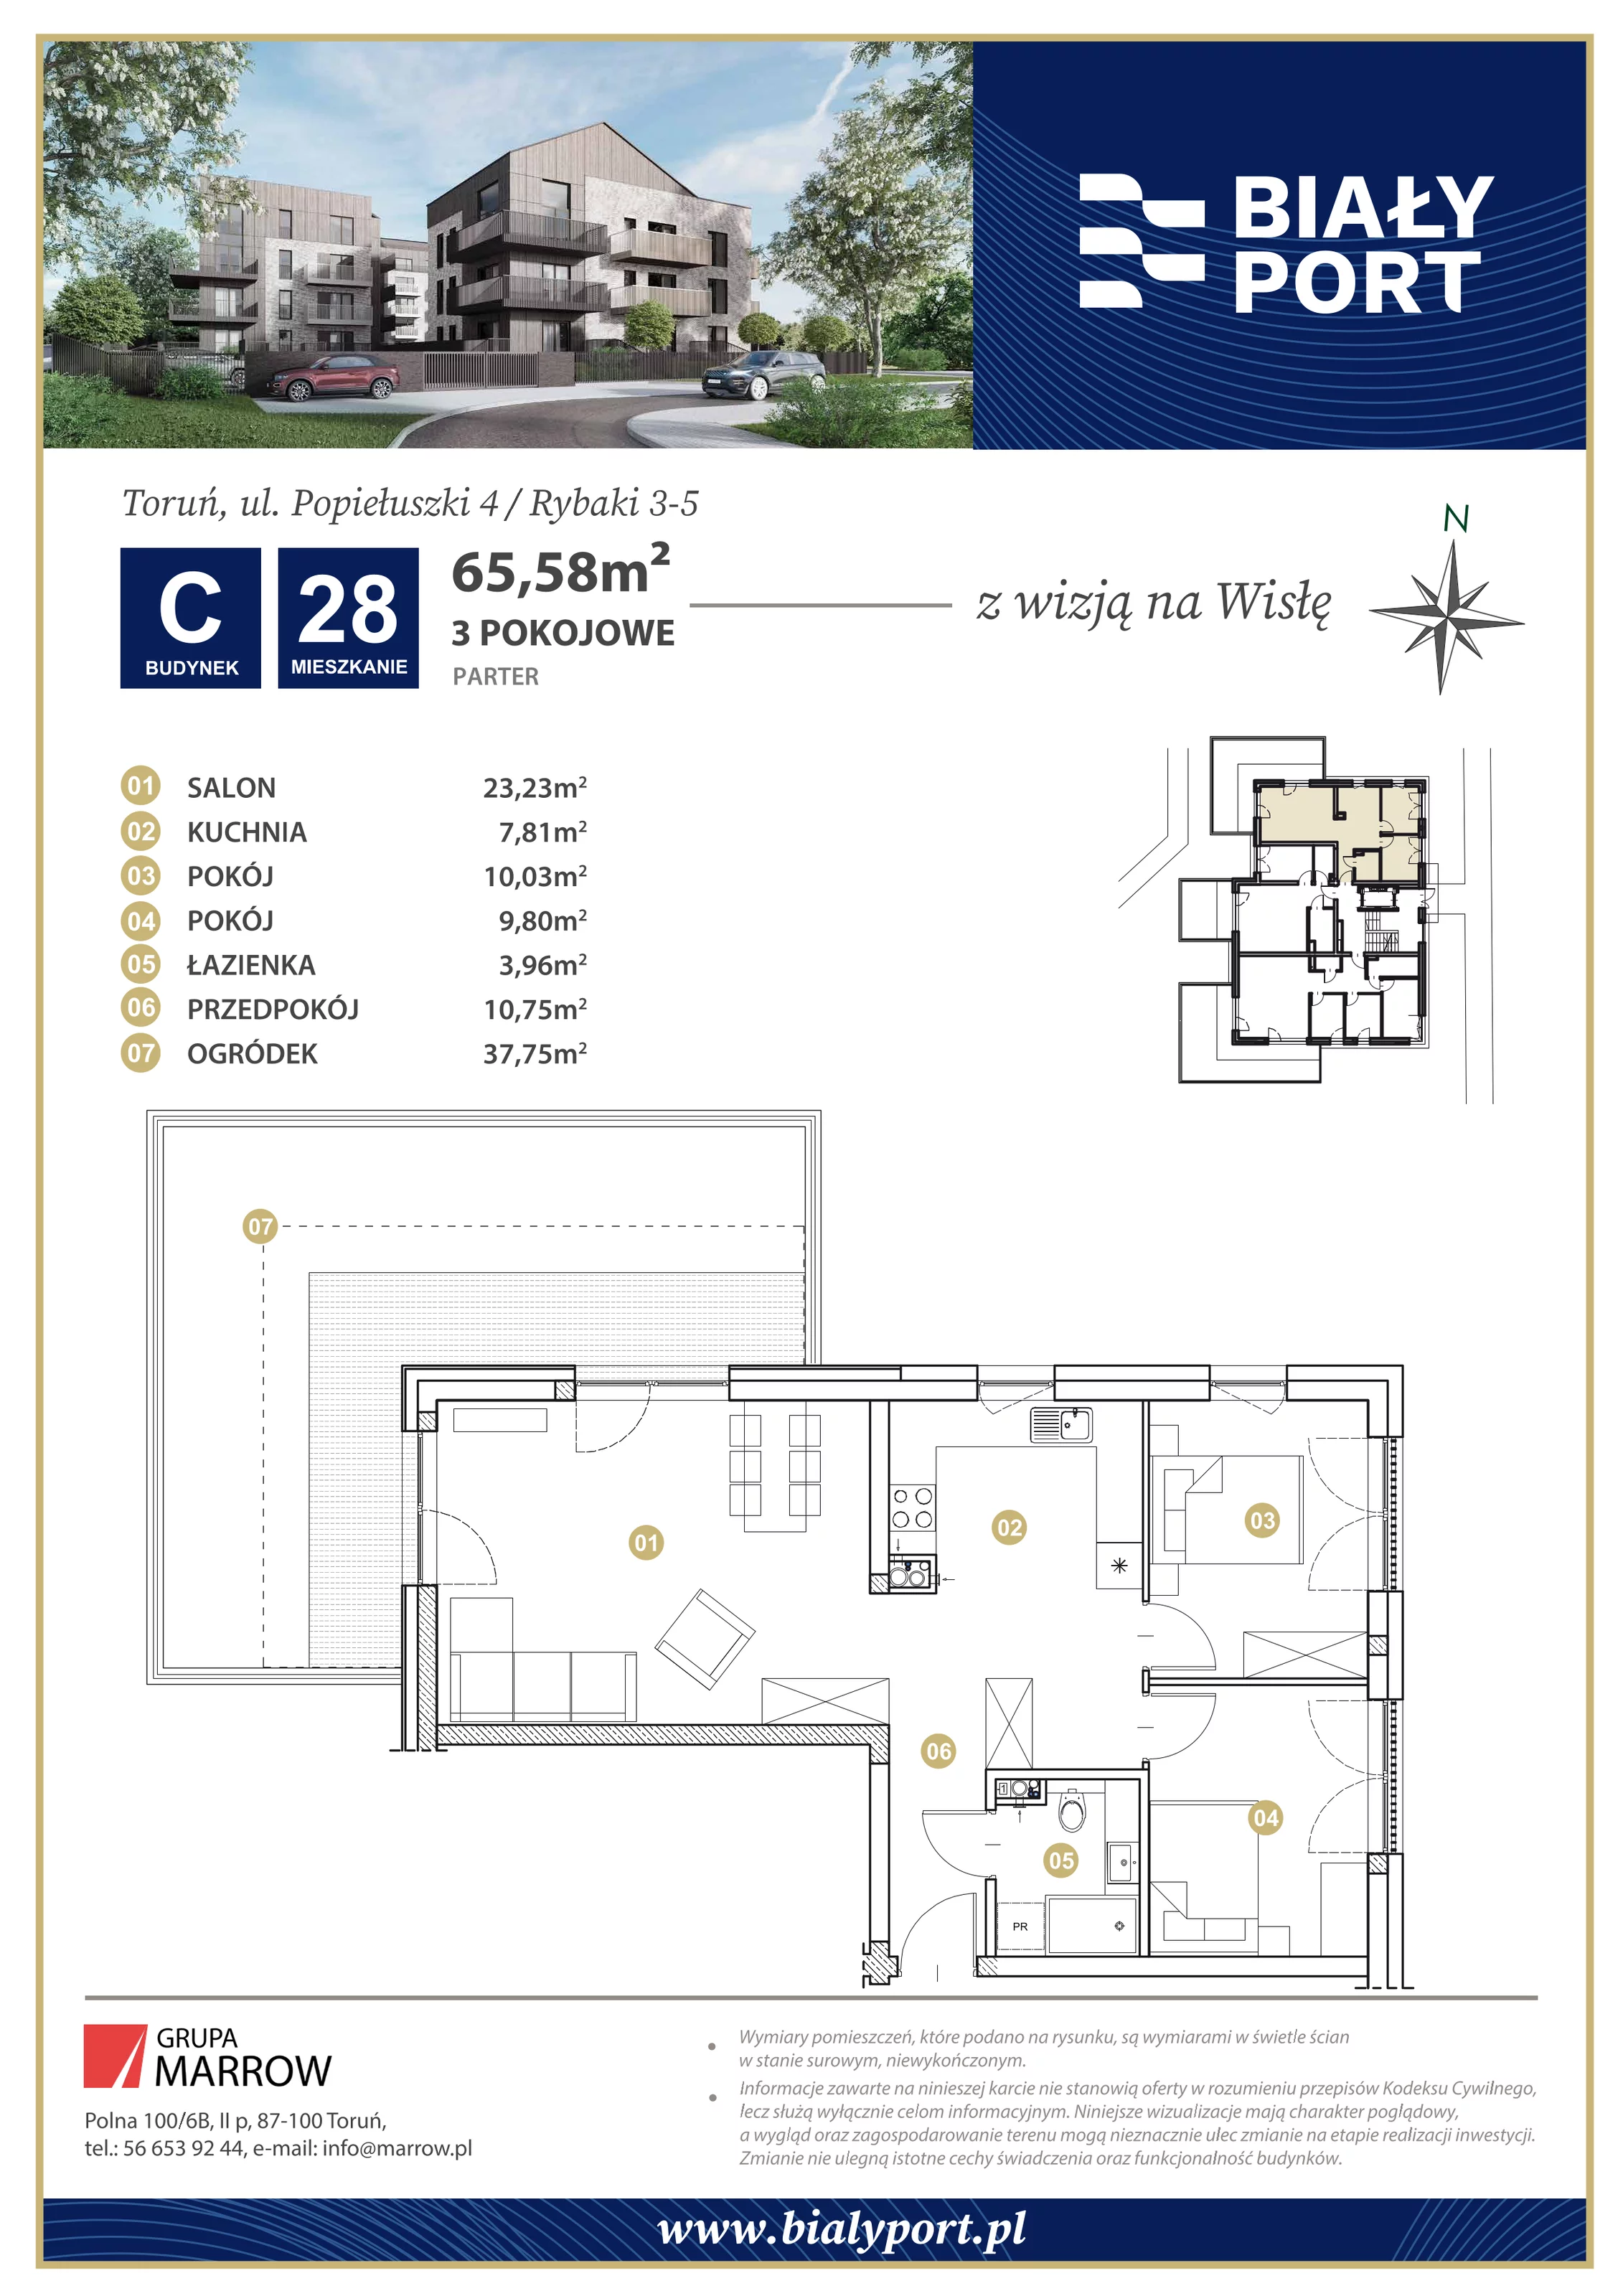 Mieszkanie 65,58 m², parter, oferta nr 28, Biały Port, Toruń, Rybaki, ul. Popiełuszki 4